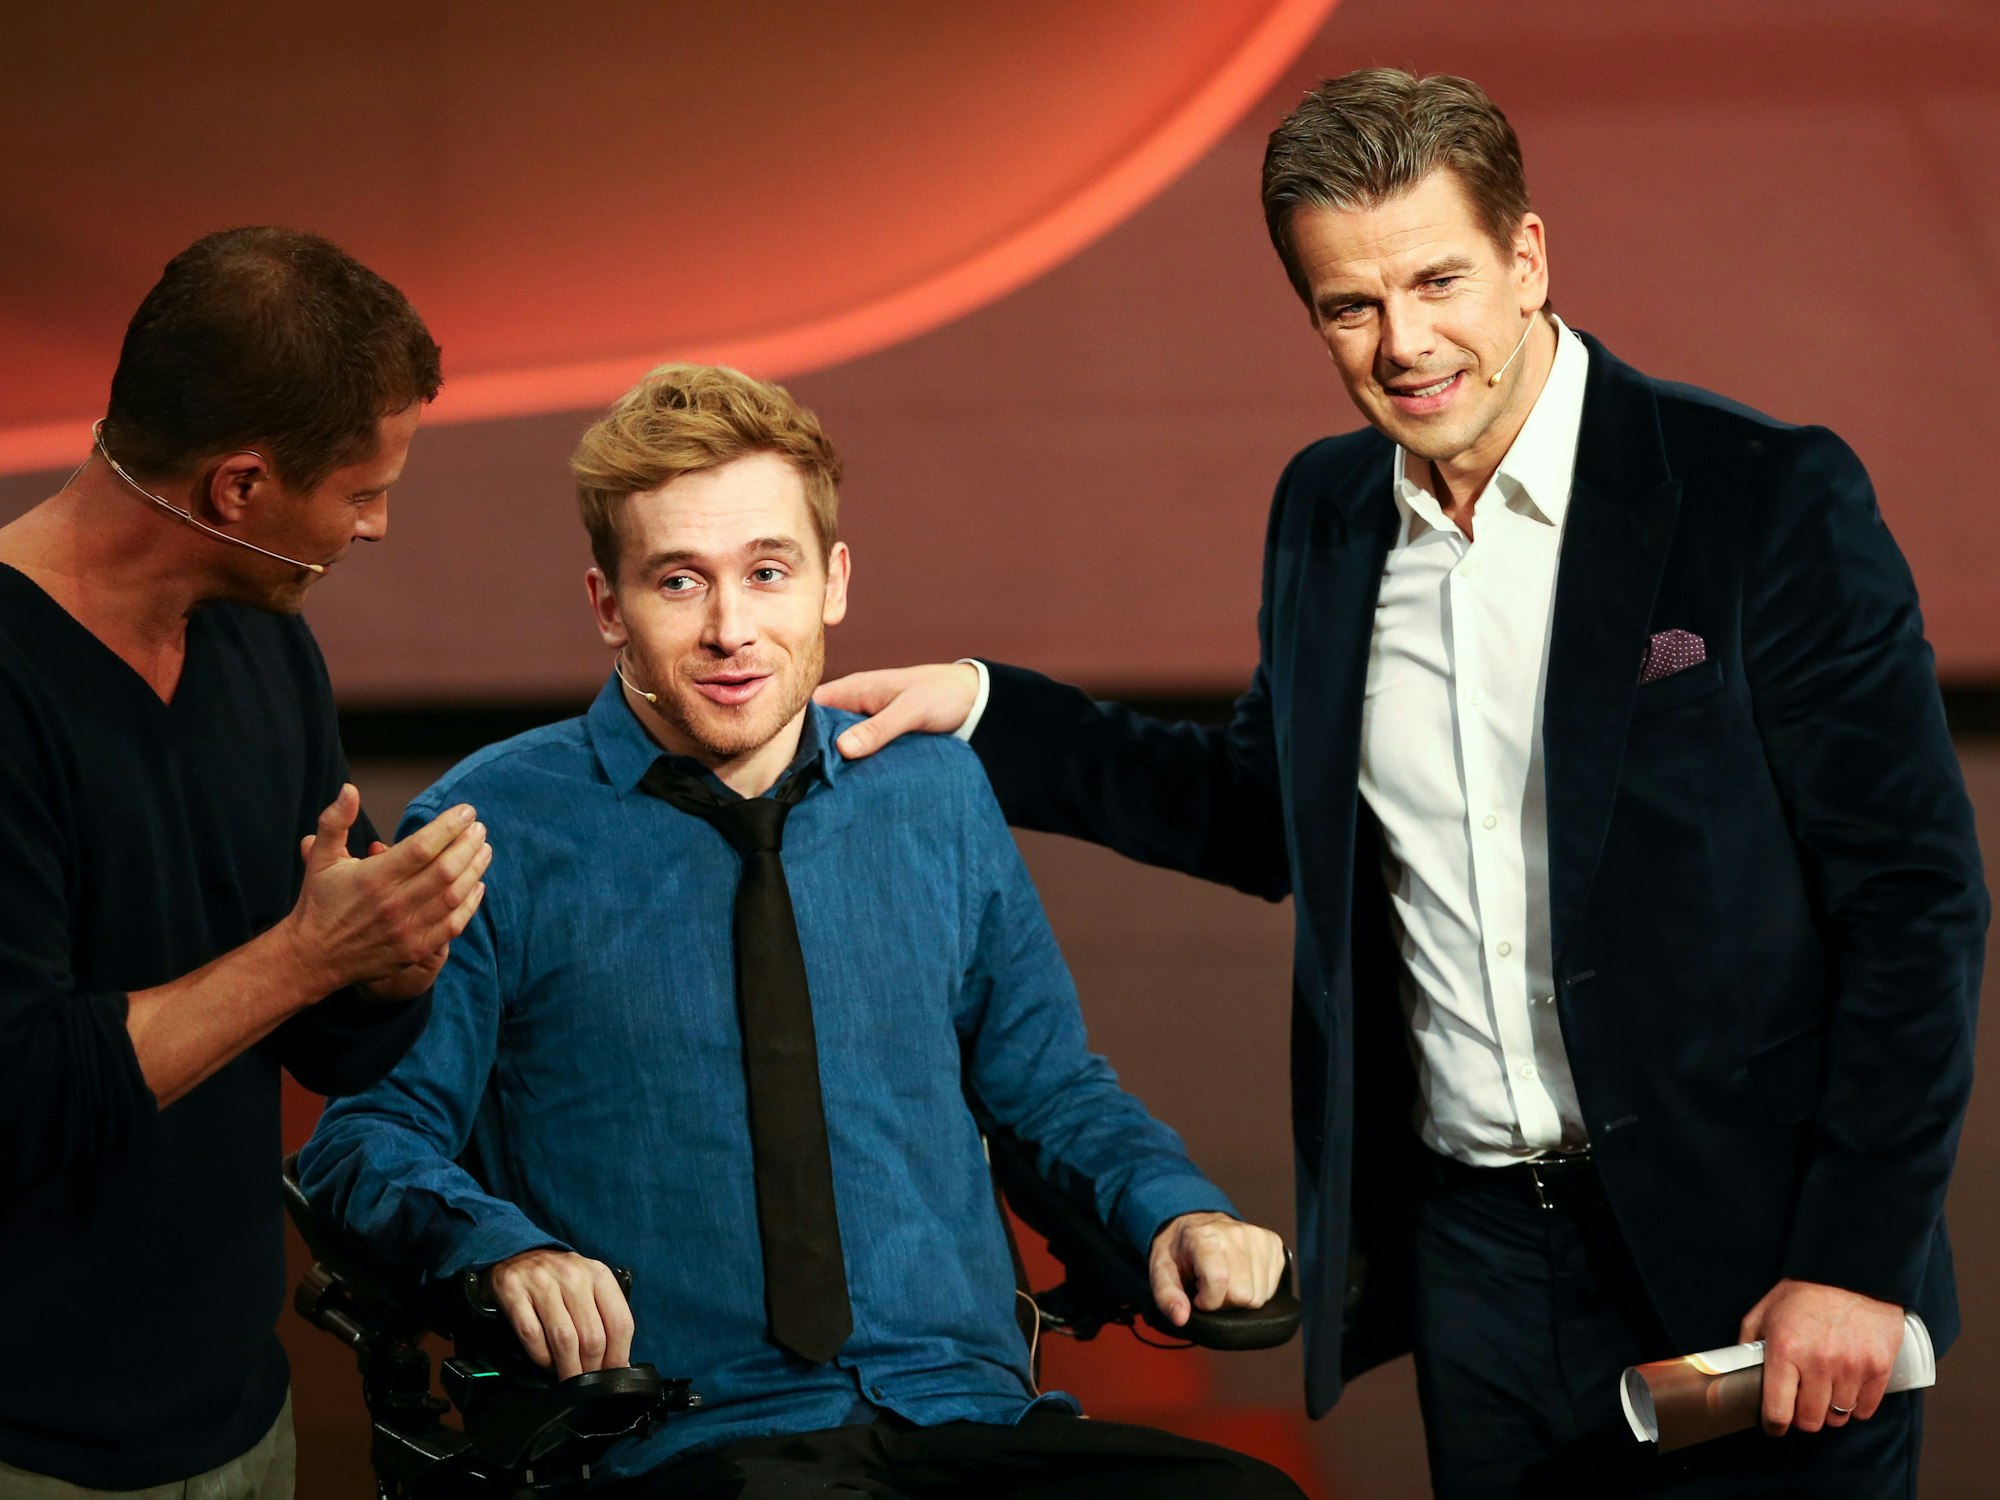 Moderator Markus Lanz (r) begrüsst am 13.12.2014 in der 215. ZDF-Show "Wetten, dass..?" in Nürnberg (Bayern) Schauspieler Til Schweiger (l) und den früheren Wettkandidaten Samuel Koch.